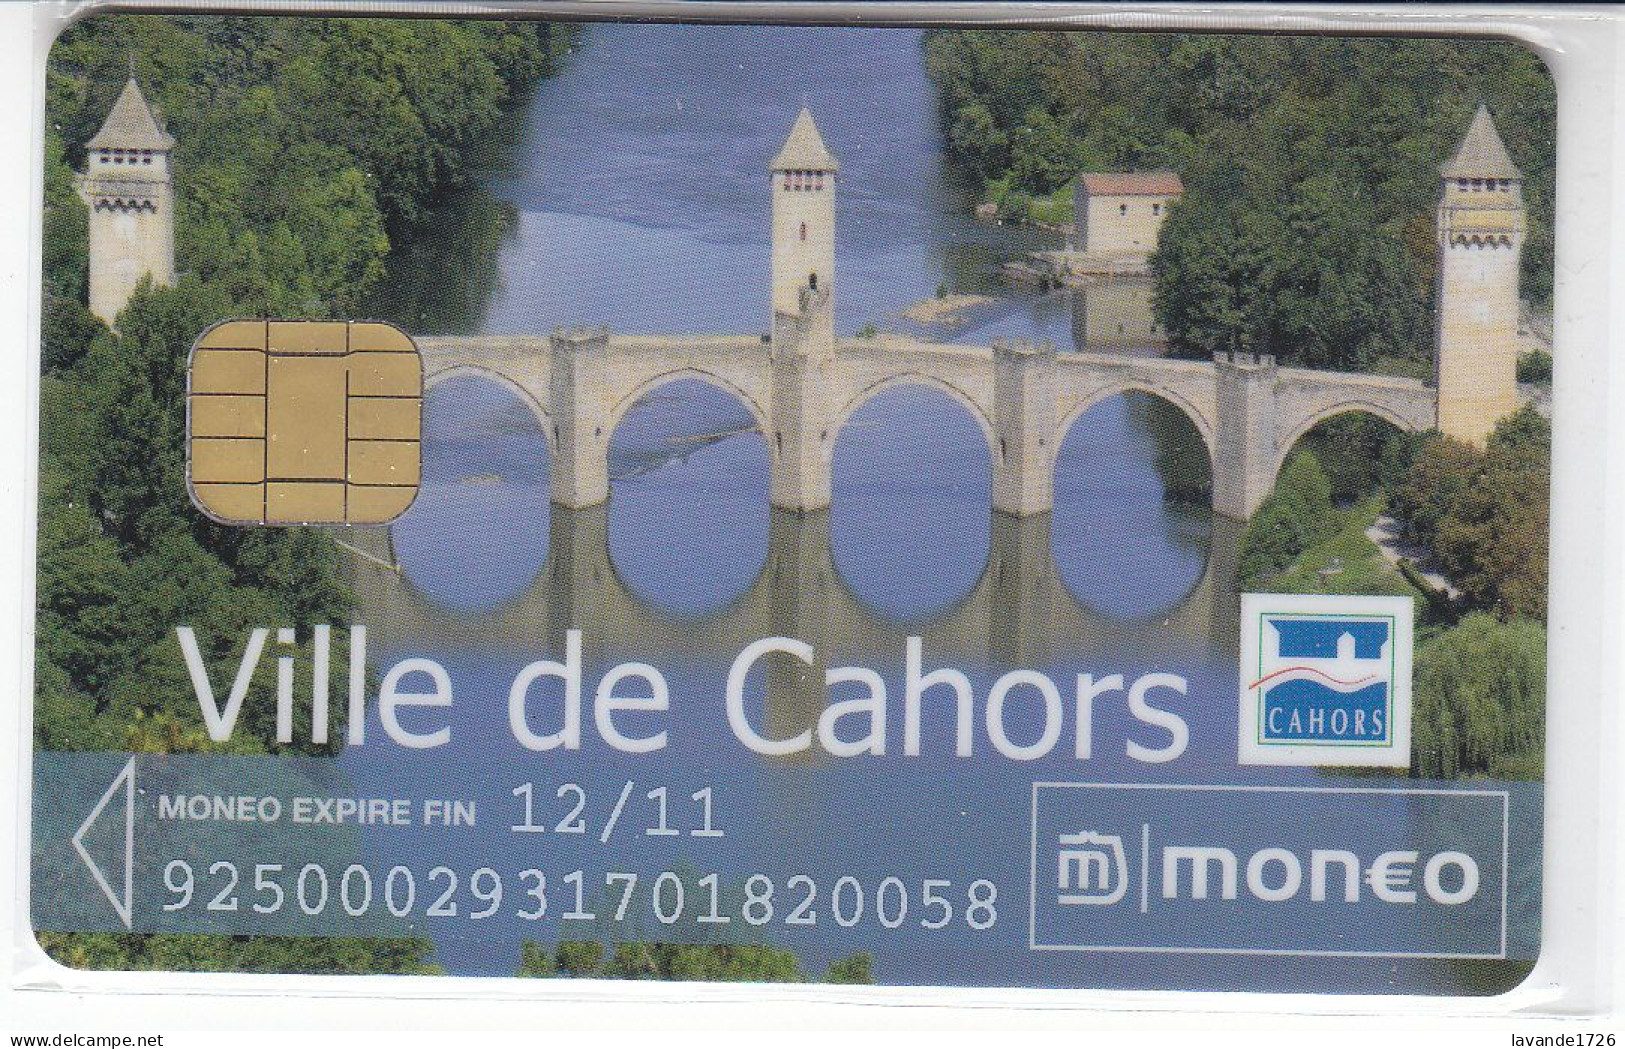 Carte MONEO   CAHORS  Date 2011 - Parkkarten